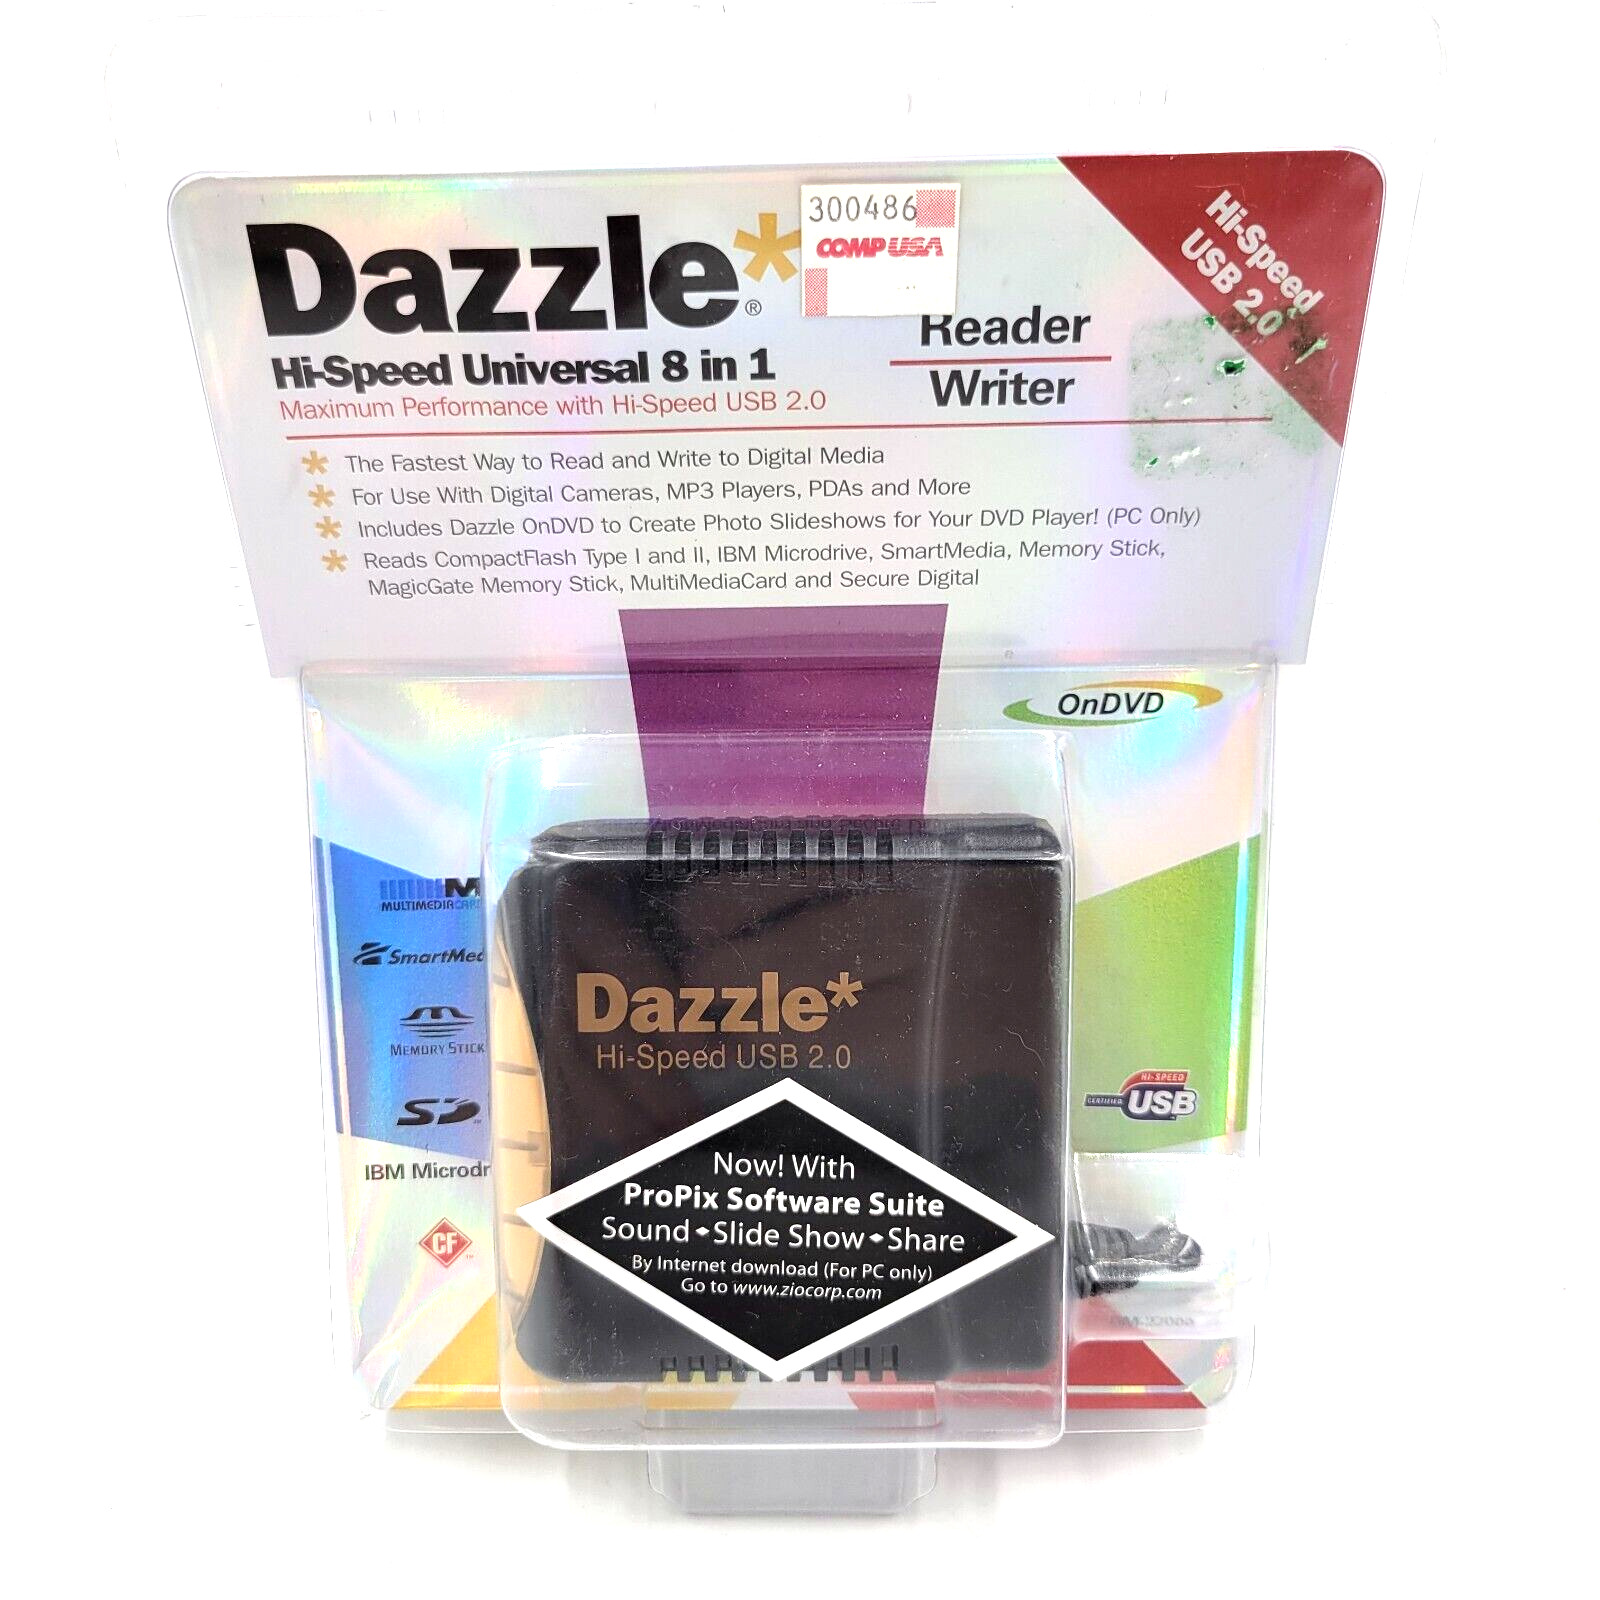 Dazzle Hi-Speed USB 2 Universal 8 in 1 Reader Writer DM-22000 & Software DVD NEW